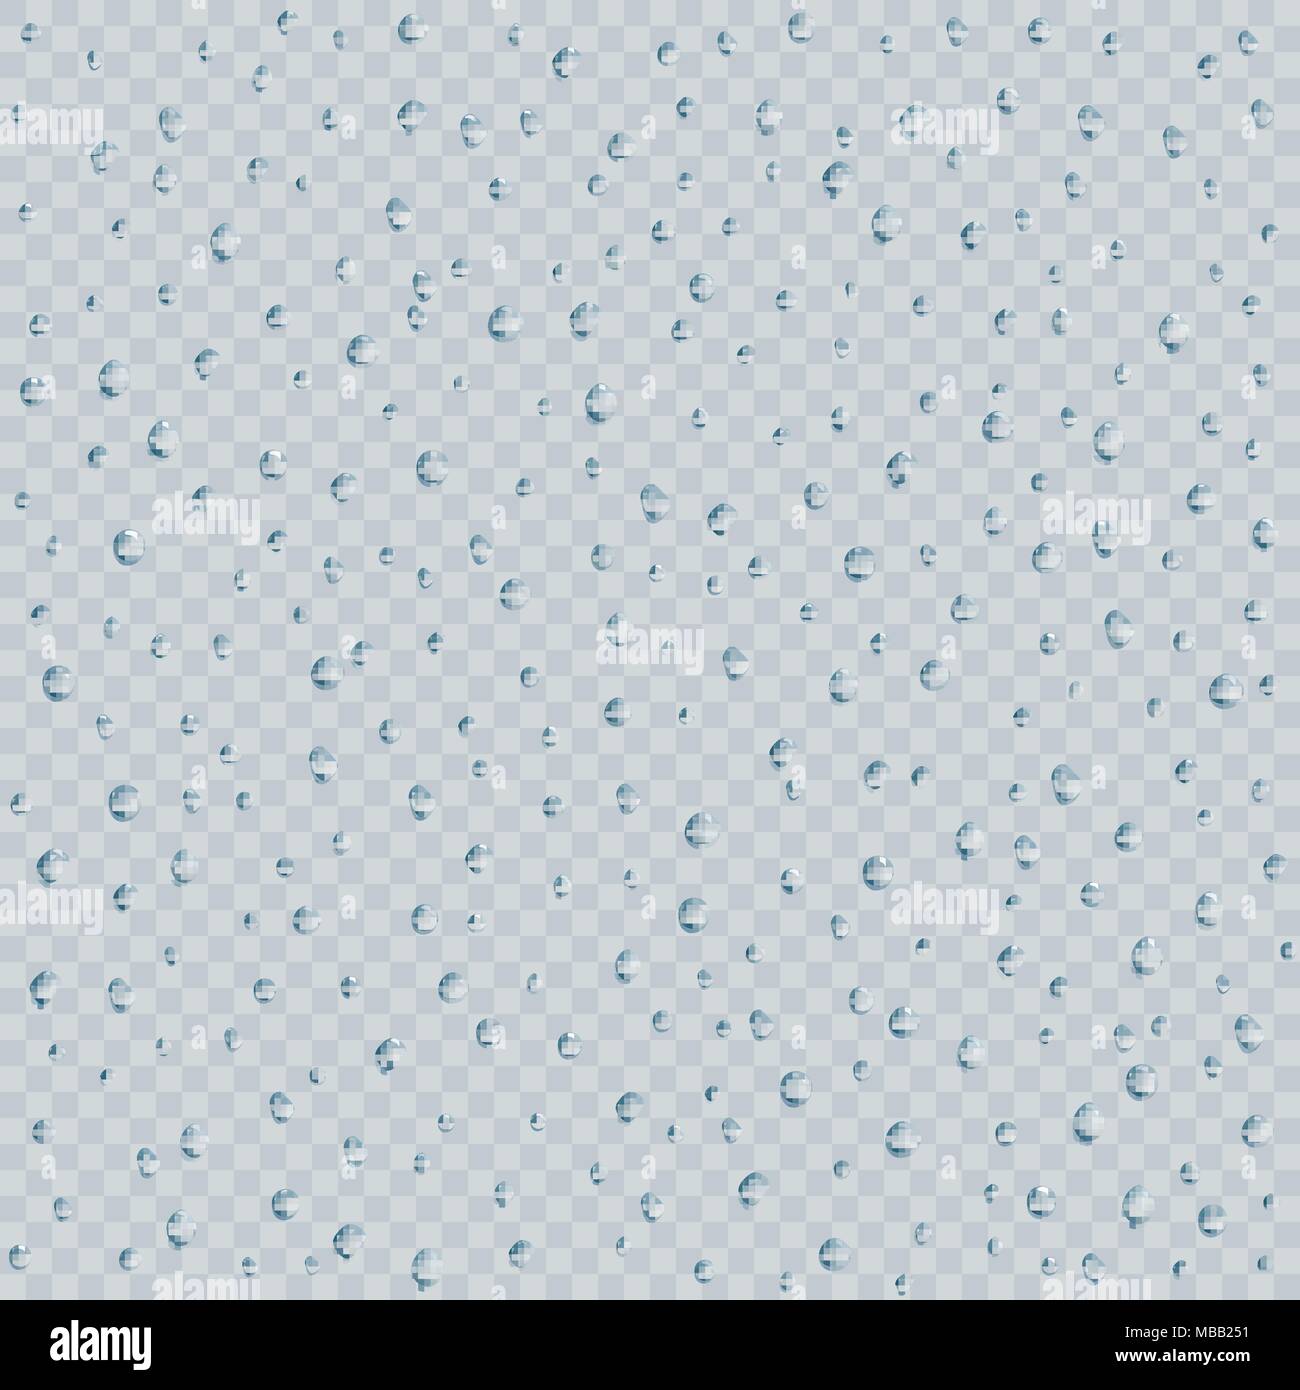 Wasser Regentropfen oder Dampfdusche textere auf transparentem Hintergrund isoliert. Realistische reine Tröpfchen kondensiert. Vector Illustration Stock Vektor